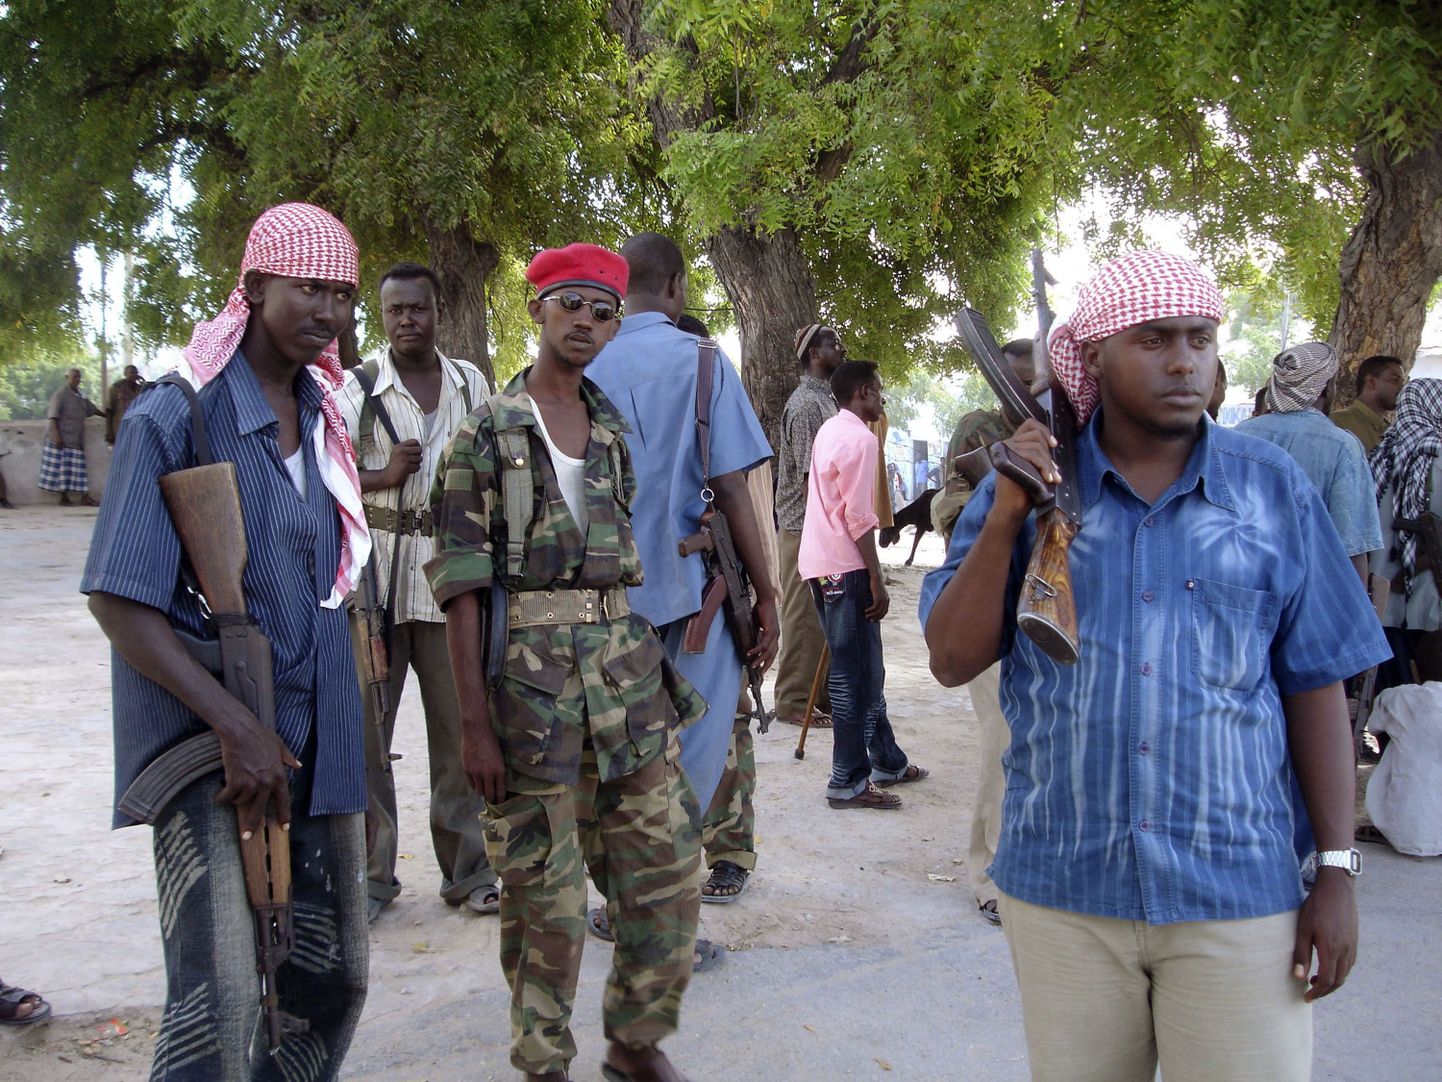 Somaalia valitsusvägede mundris sõdurid kõrvuti islamikohtute liidu erariietes võitlejatega Muqdishos, kuhu saabus täna mõõdukamate islamistide liider šeik Sharif Ahmed.